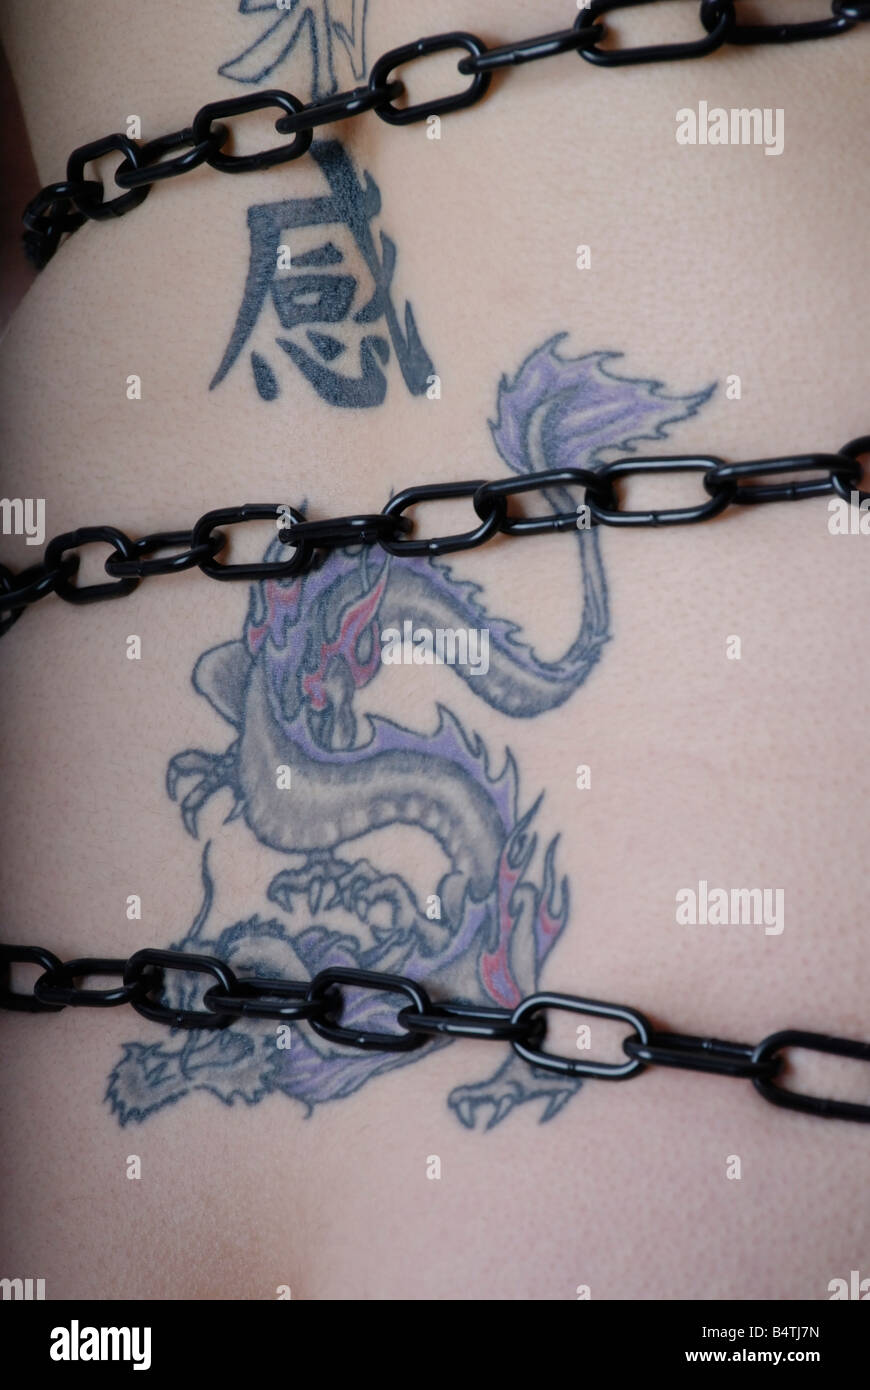 Tatuaje de un dragón azul y el kanji enlazados en cadenas negro Foto de stock